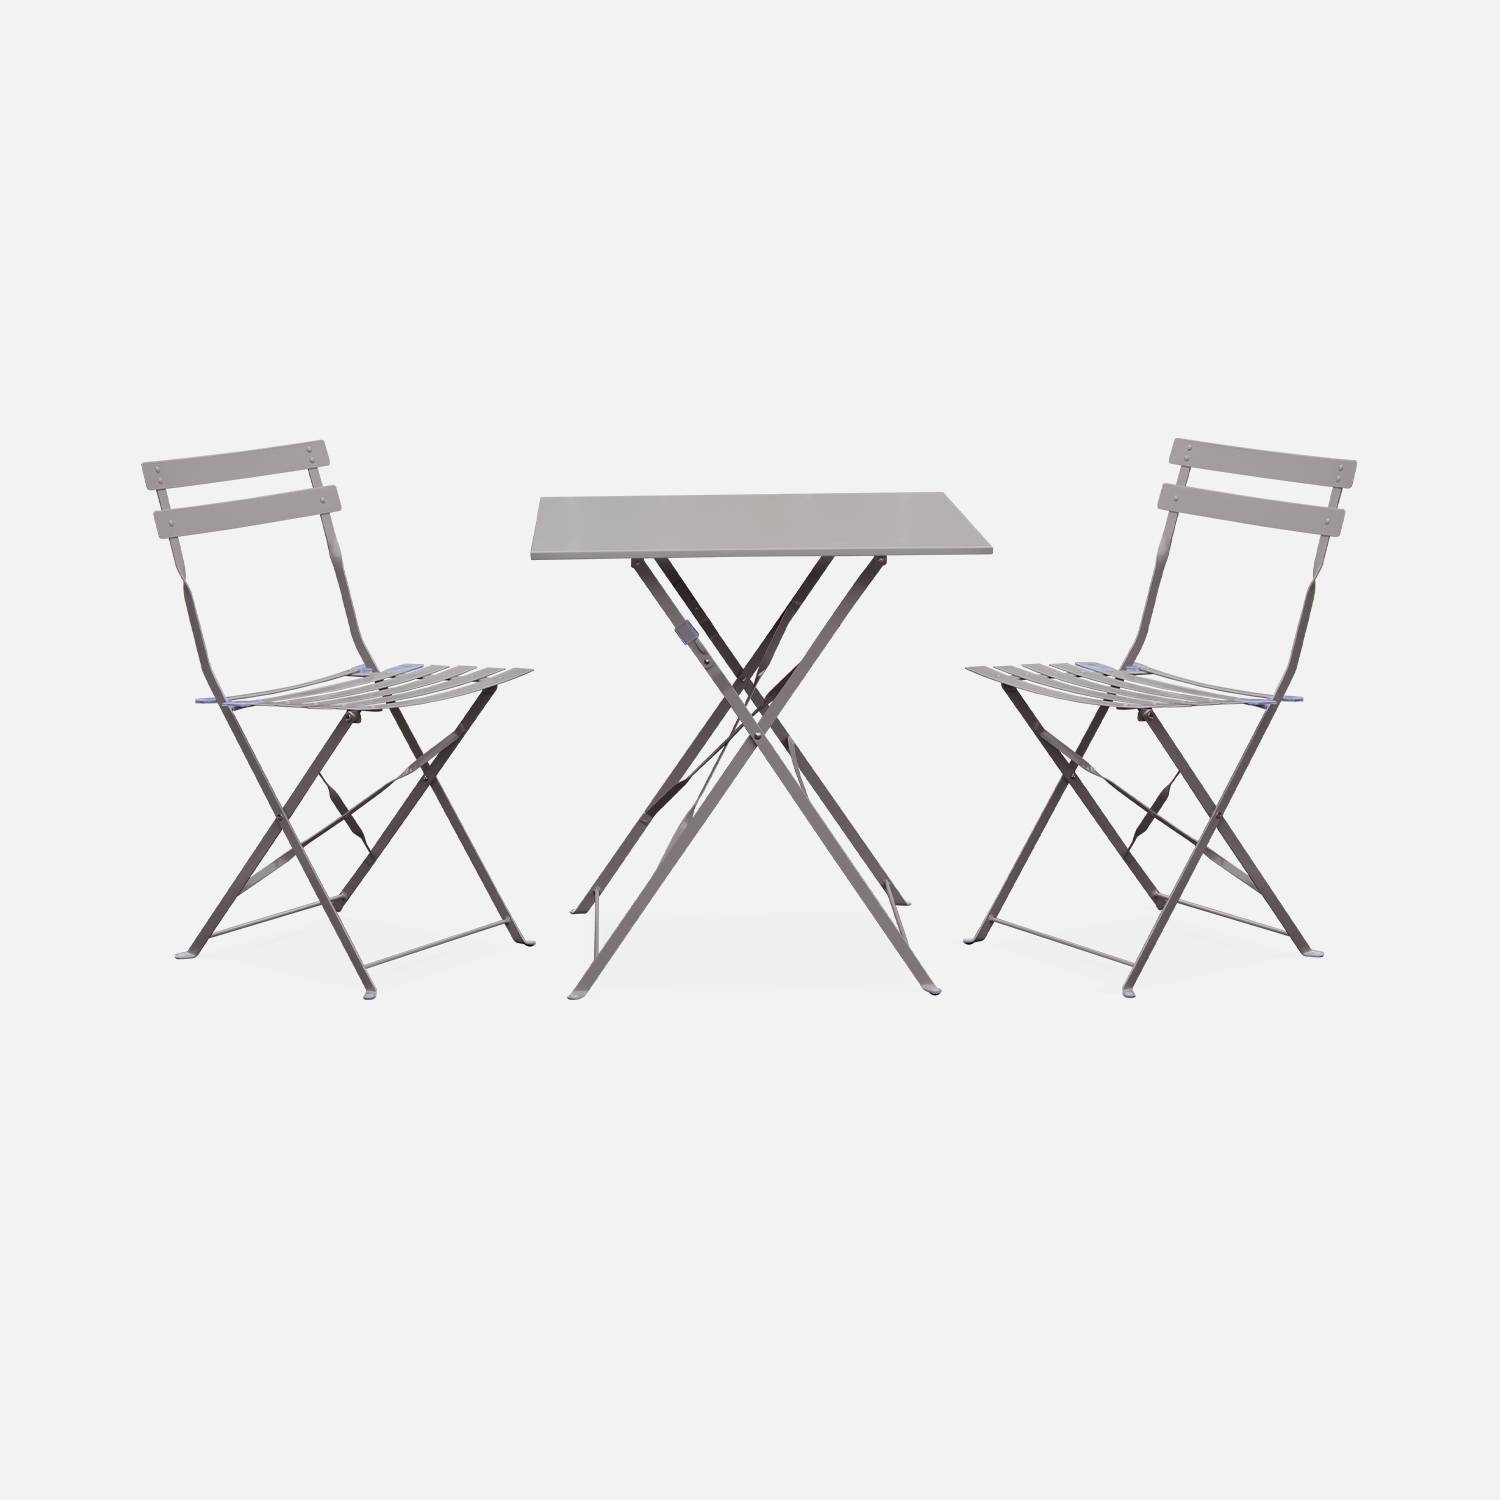 Klappbare Bistro-Gartenmöbel - Emilia taupe grau - Quadratischer Tisch 70x70cm mit zwei Klappstühlen aus pulverbeschichtetem Stahl Photo2